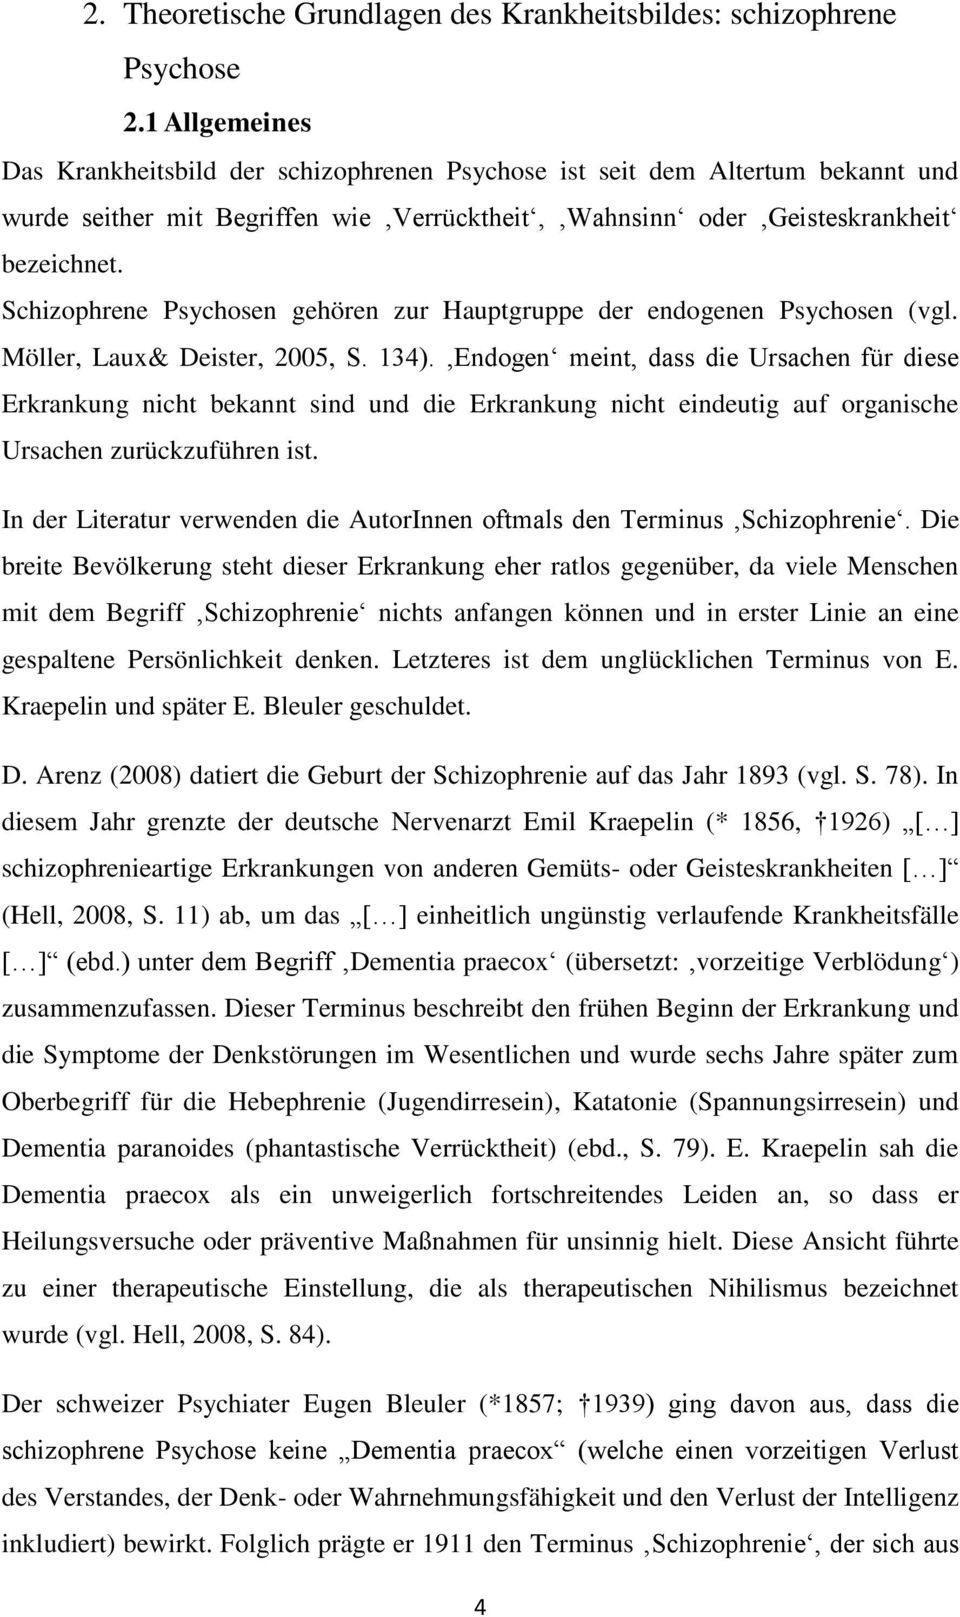 Schizophrene Psychosen gehören zur Hauptgruppe der endogenen Psychosen (vgl. Möller, Laux& Deister, 2005, S. 134).